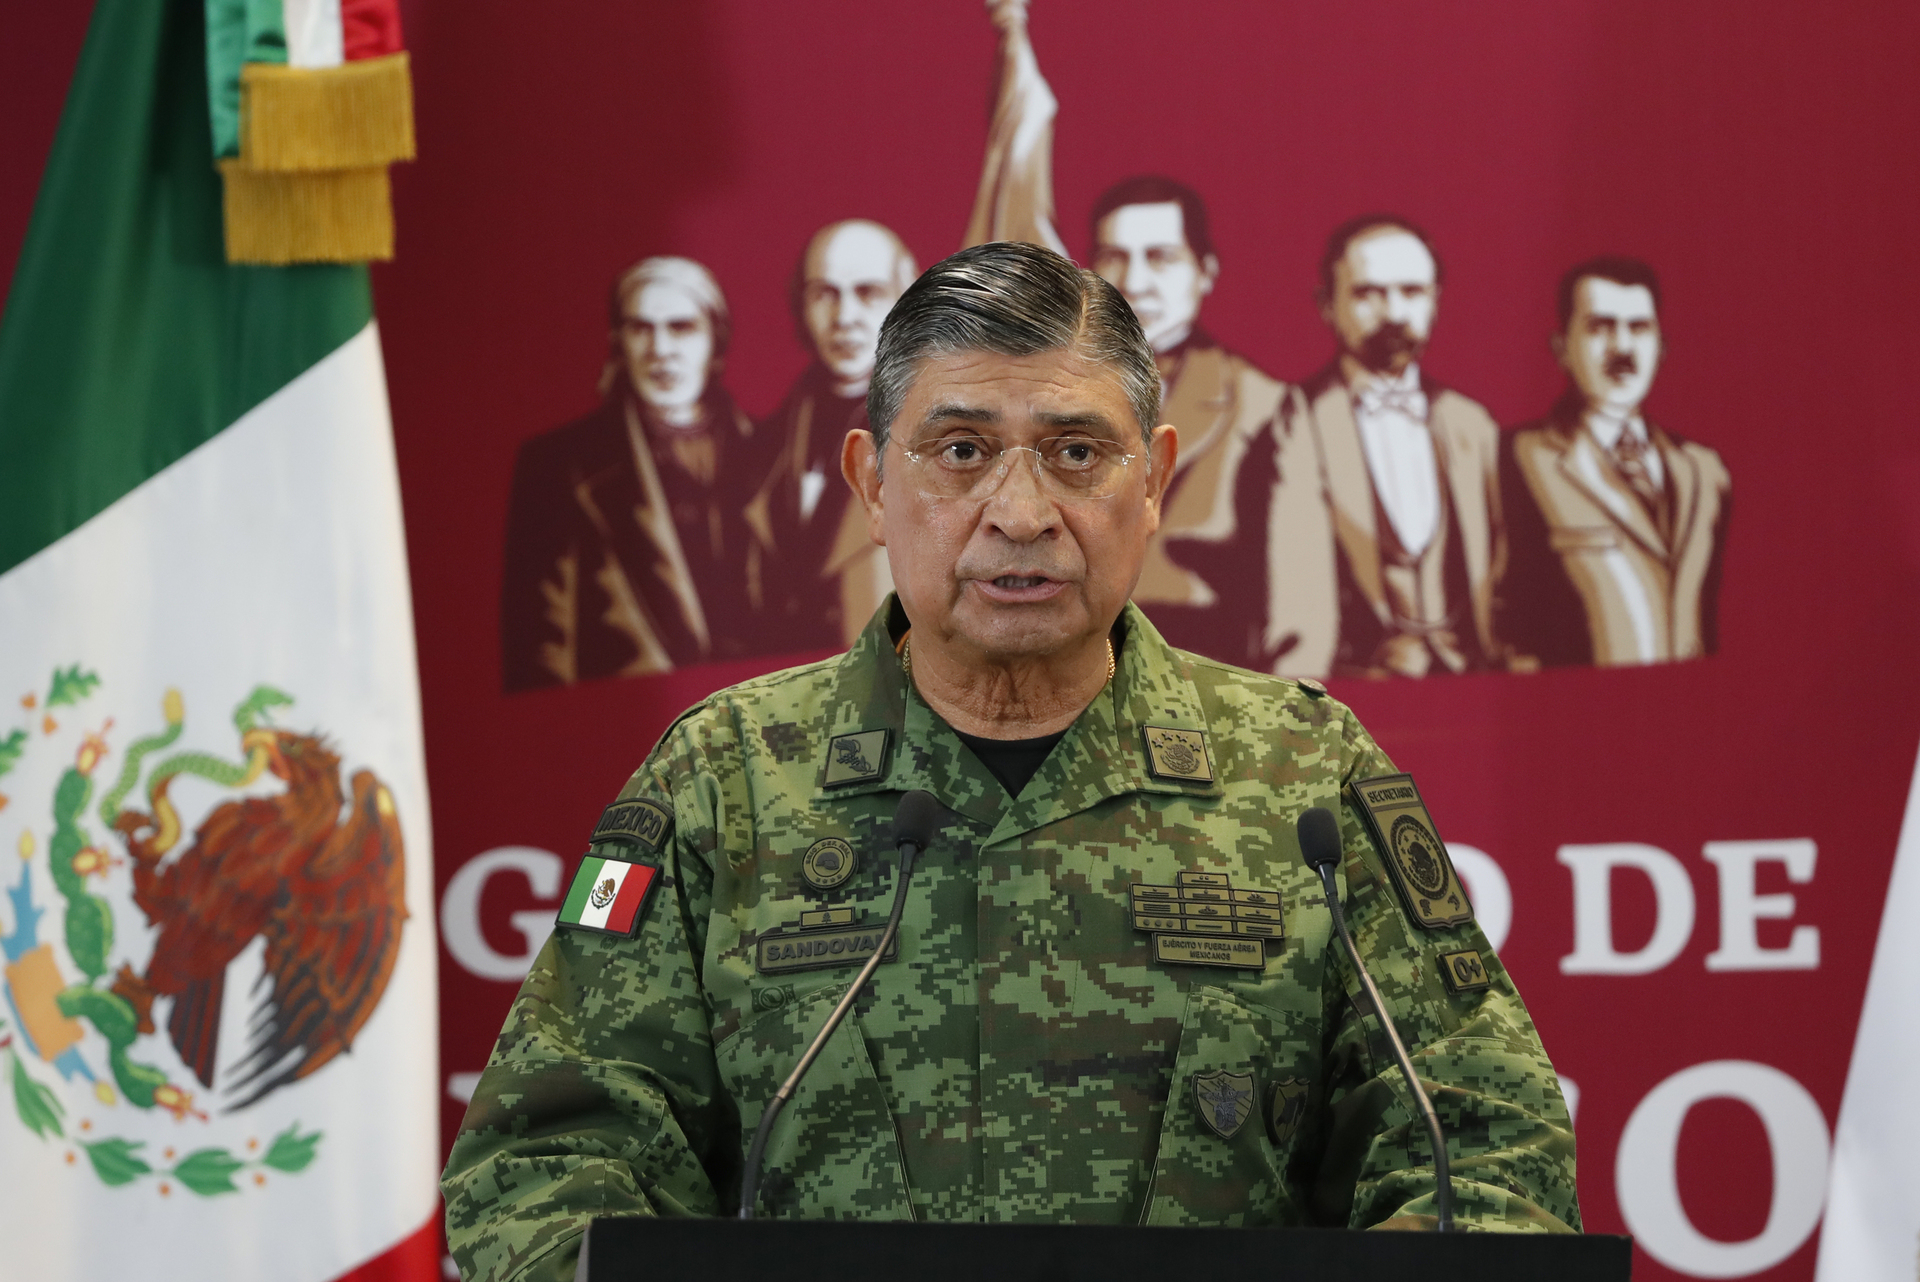 El titular de la Sedena detalló que también fue detenido Rafael 'N' el 3 de febrero en Ciudad de México, quien es considerado líder de un grupo criminal independiente. (ARCHIVO)